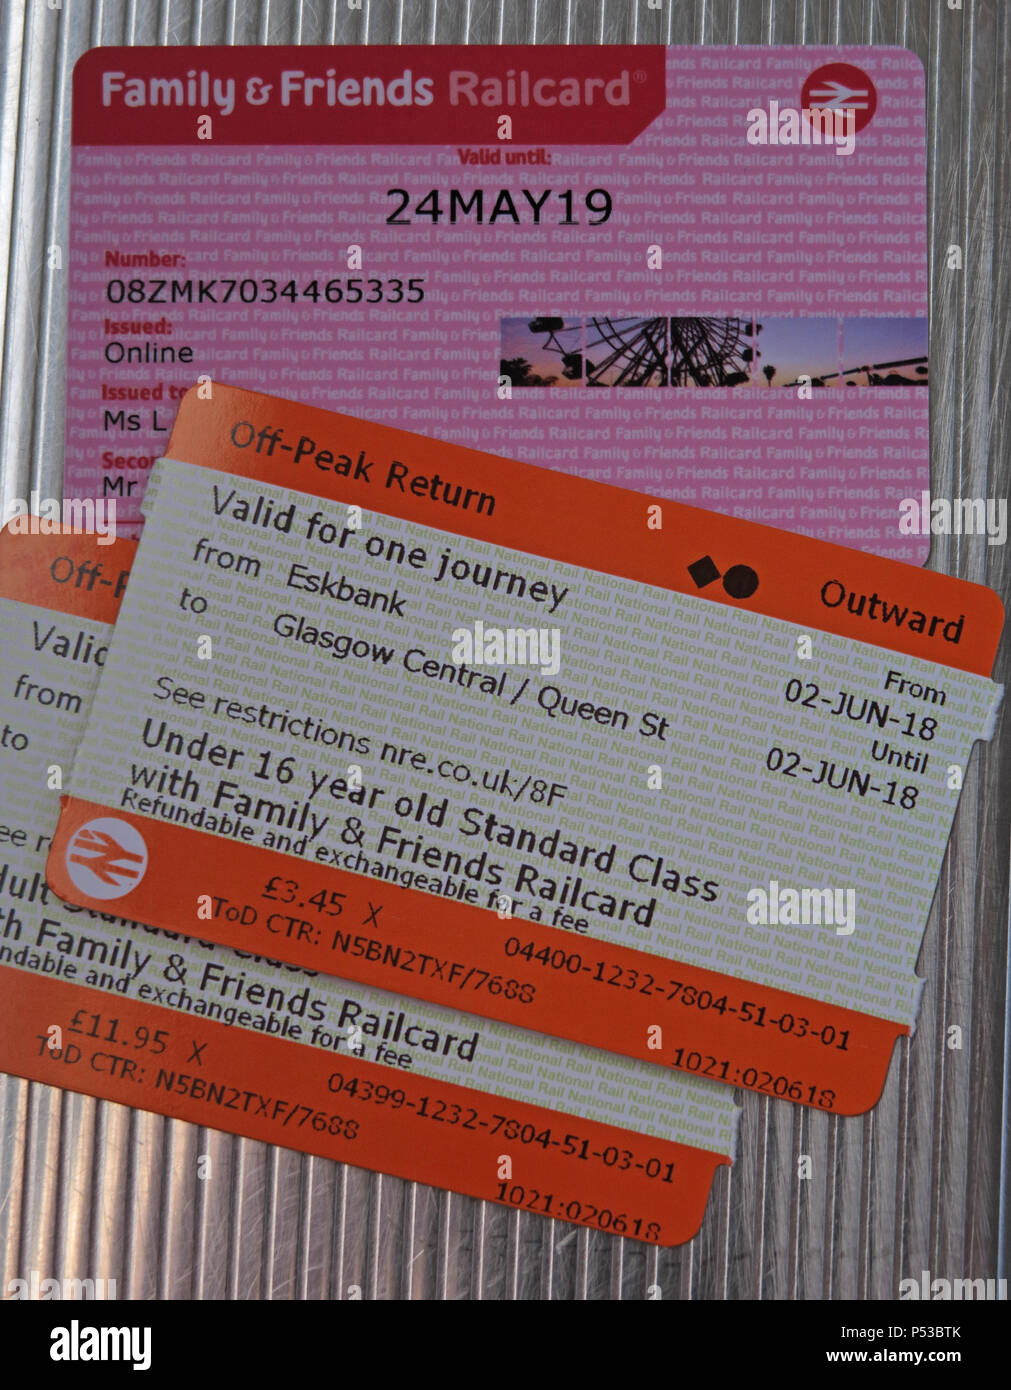 Freunde & Familie Bahncard und zwei scotrail Bahntickets, Erwachsene und Kinder, Eskbank, Midlothian, Grenzen Eisenbahn, Schottland, Großbritannien Stockfoto